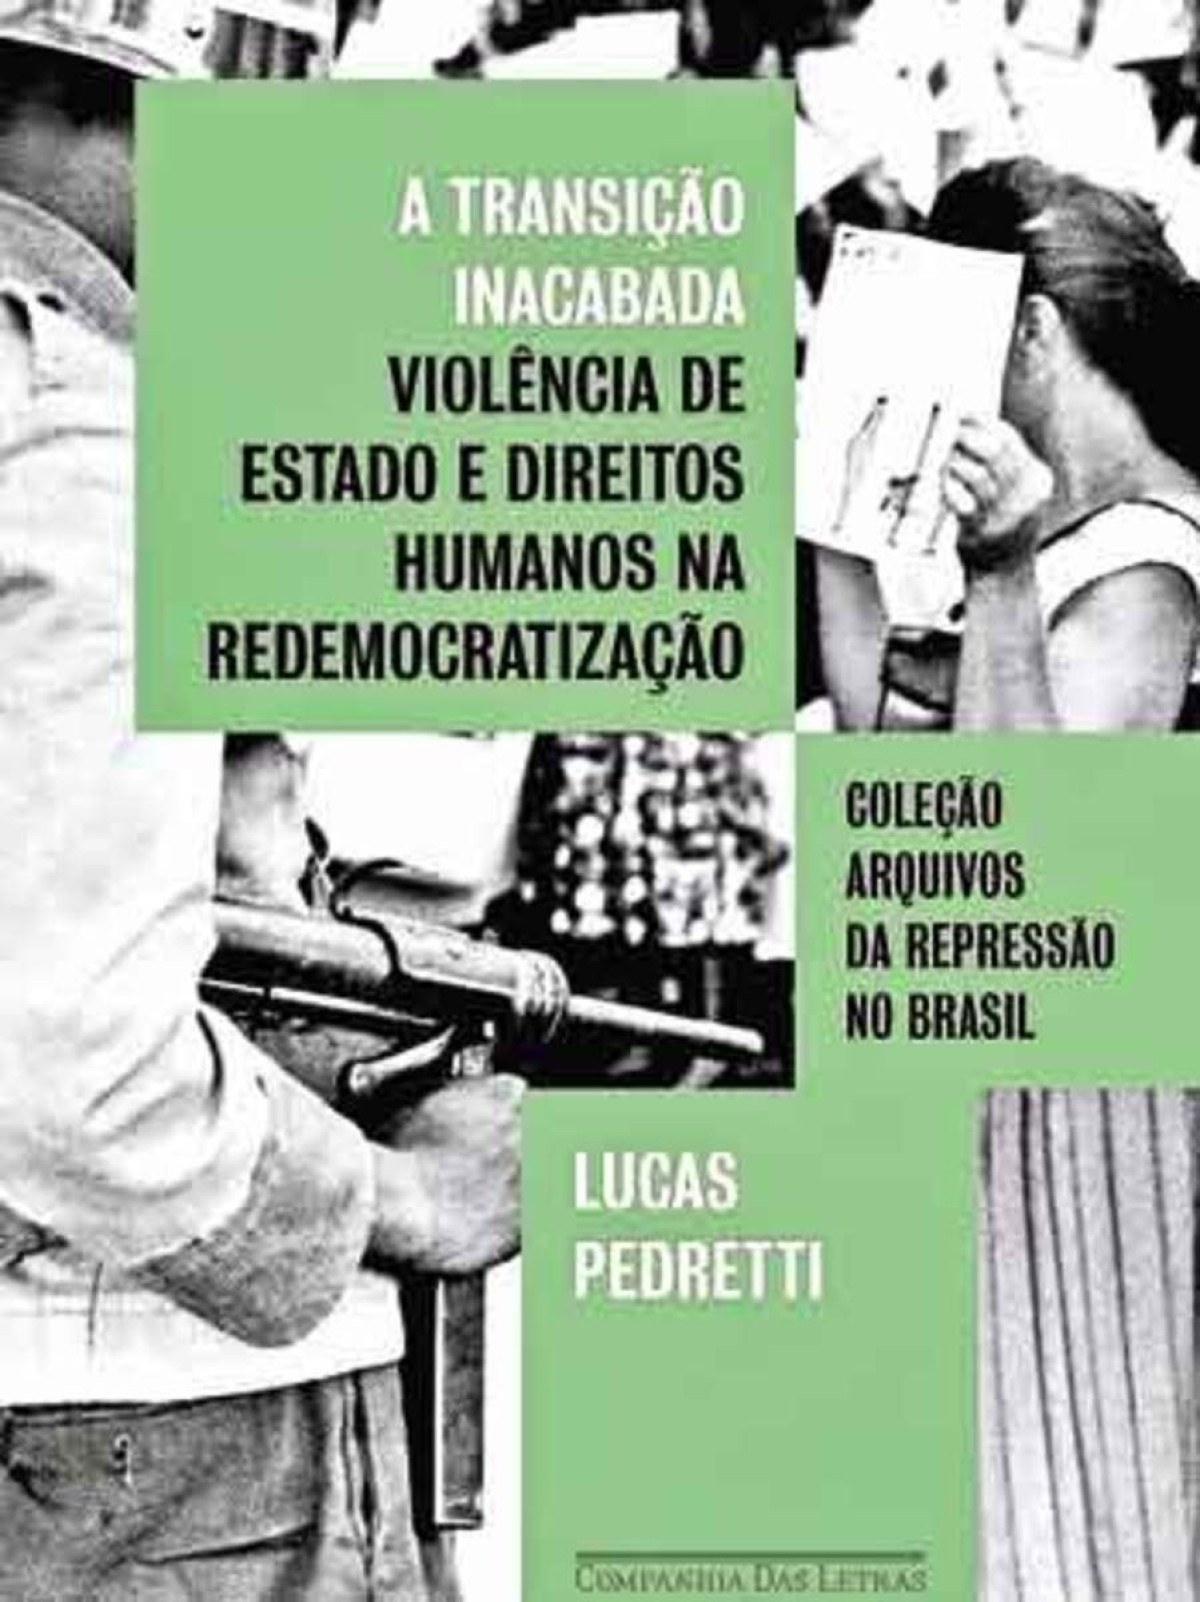 capa do livro "A transição inacabada: violência de Estado e direitos humanos na redemocratização" 